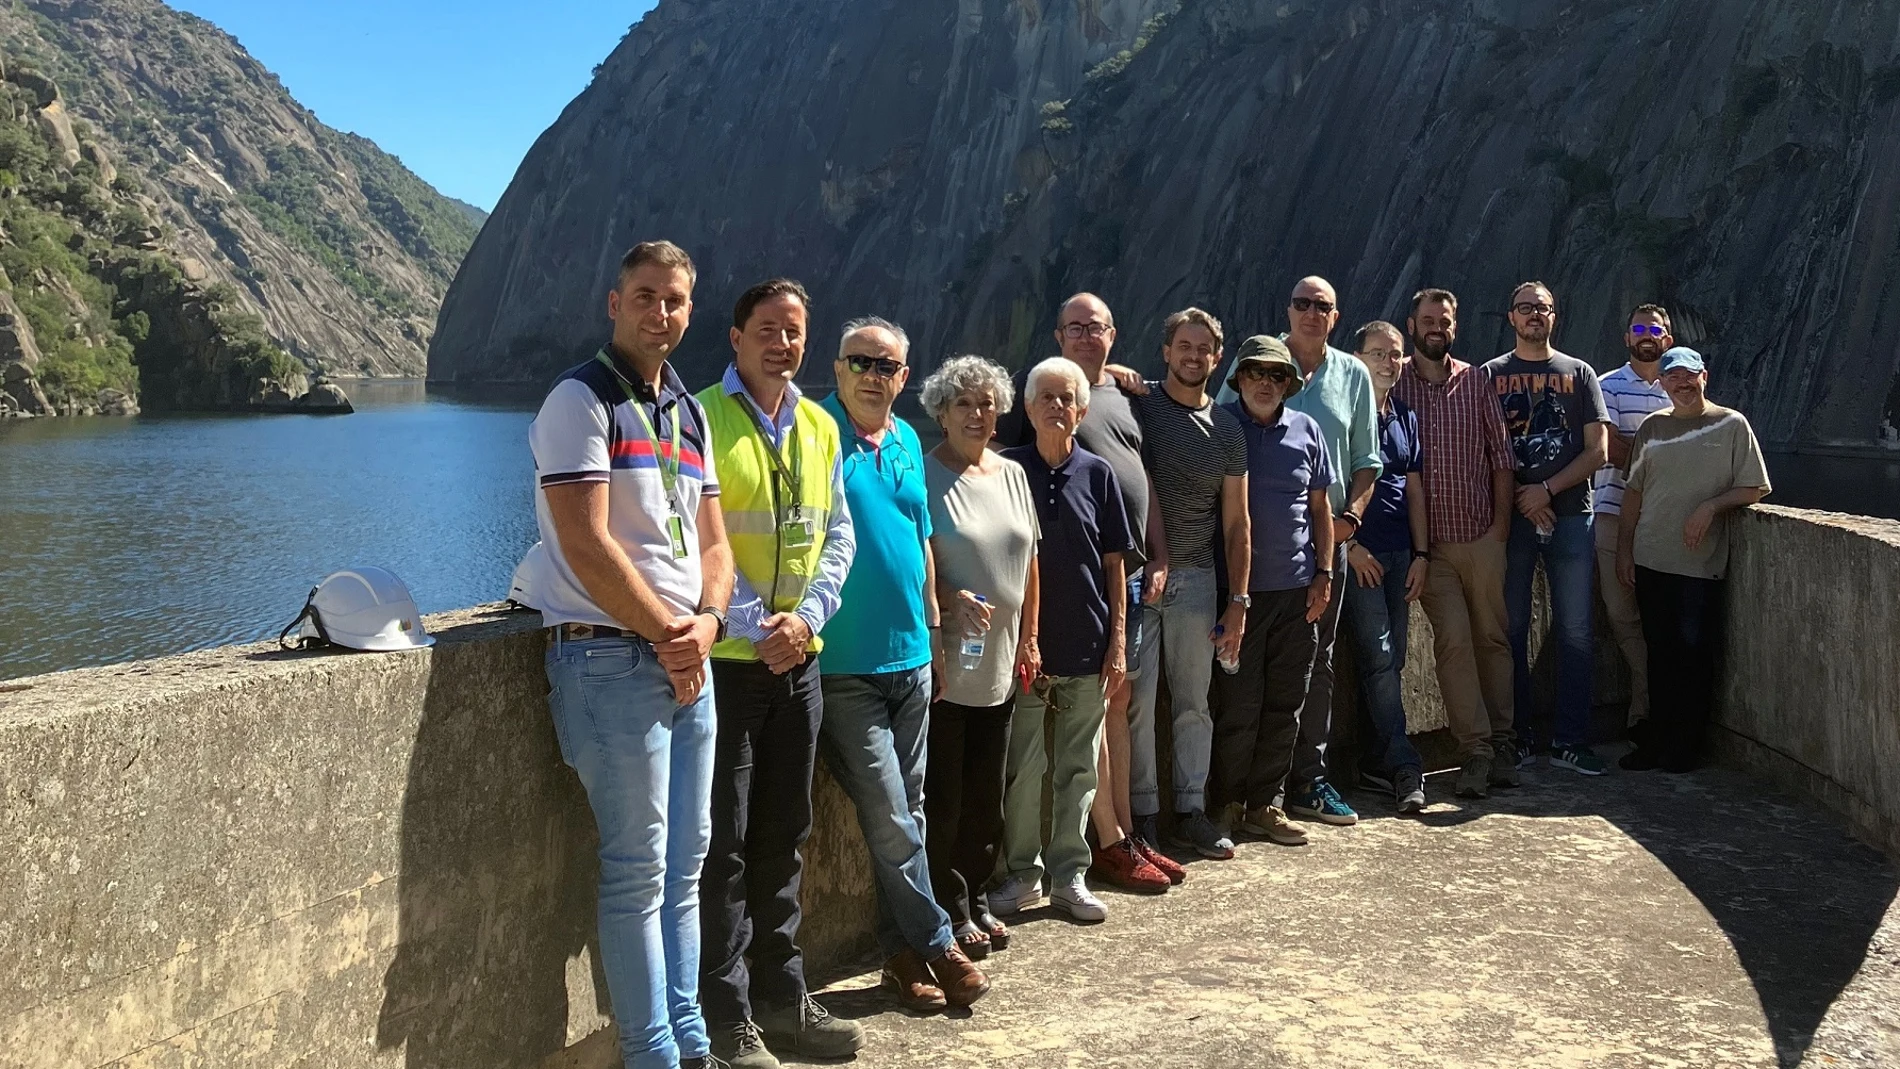 En la imagen, los invitados posan junto al director de la instalación, Clodoaldo Rodriguez, y el director de explotación de presas de Iberdrola en la zona Oeste, Alberto Vaquero